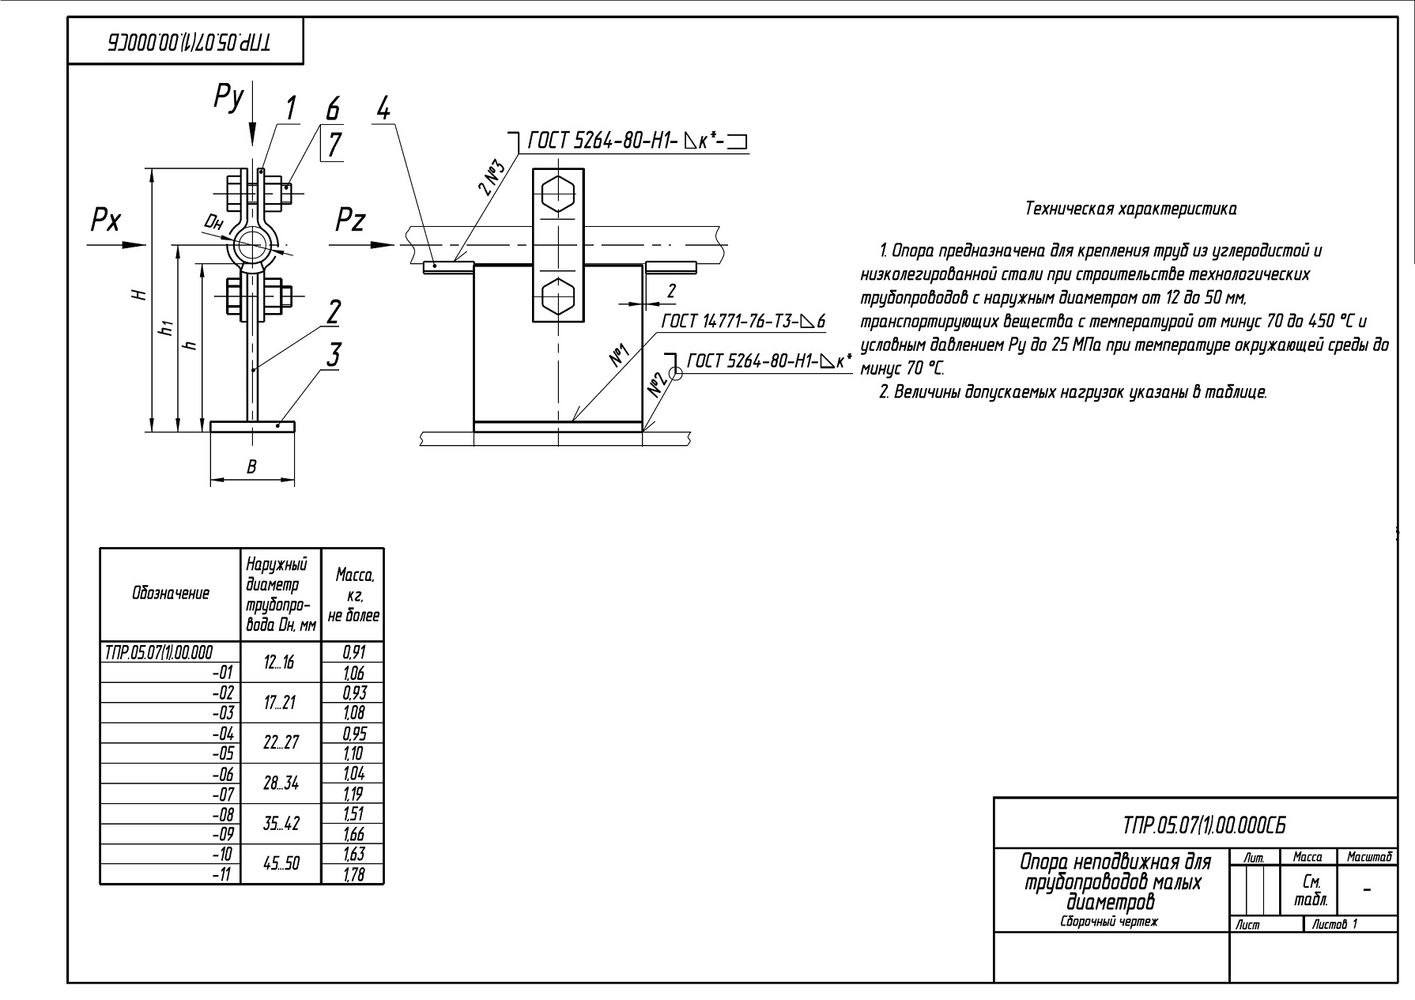 ТПР.05.07(1).00.000 Опора неподвижная для трубопроводов малых диаметров Дн12-50 мм